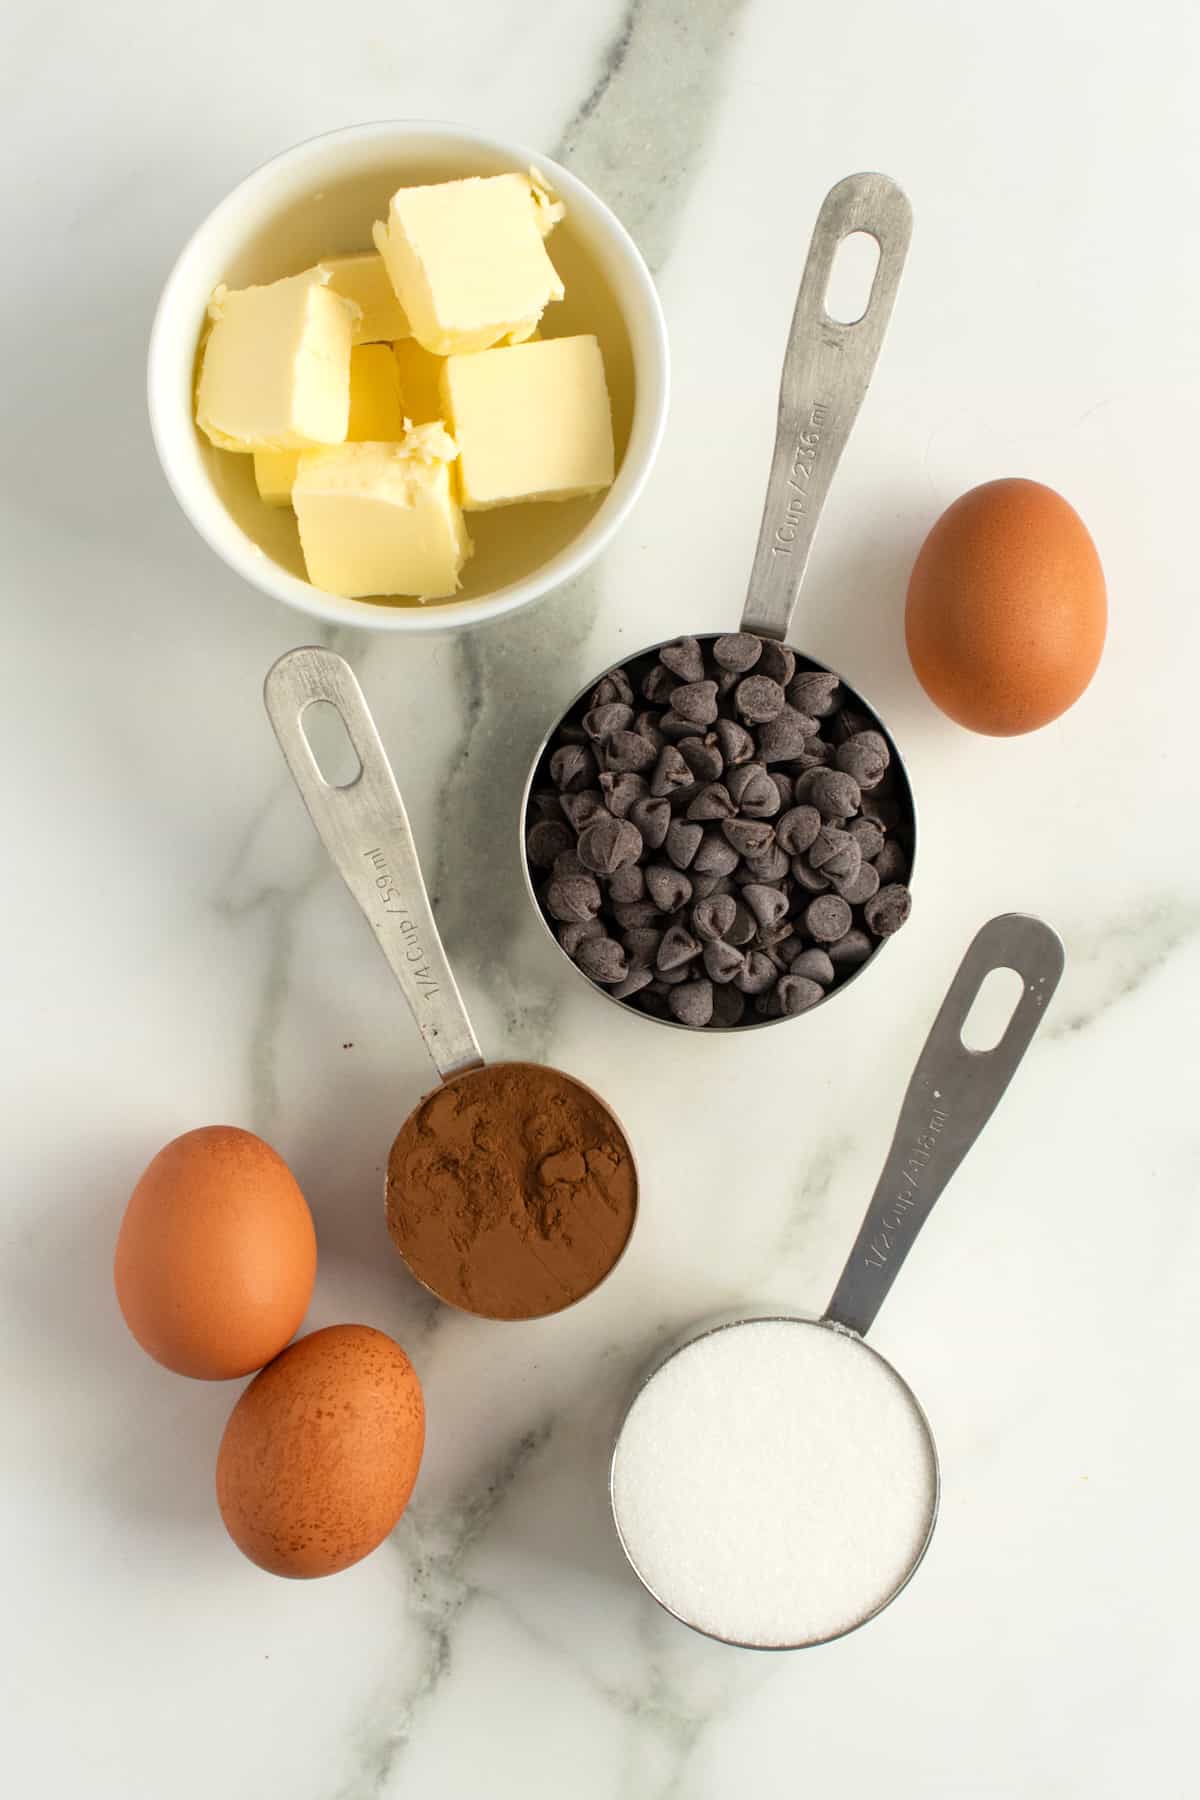 5 Ingredient Flourless Brownies by The BakerMama